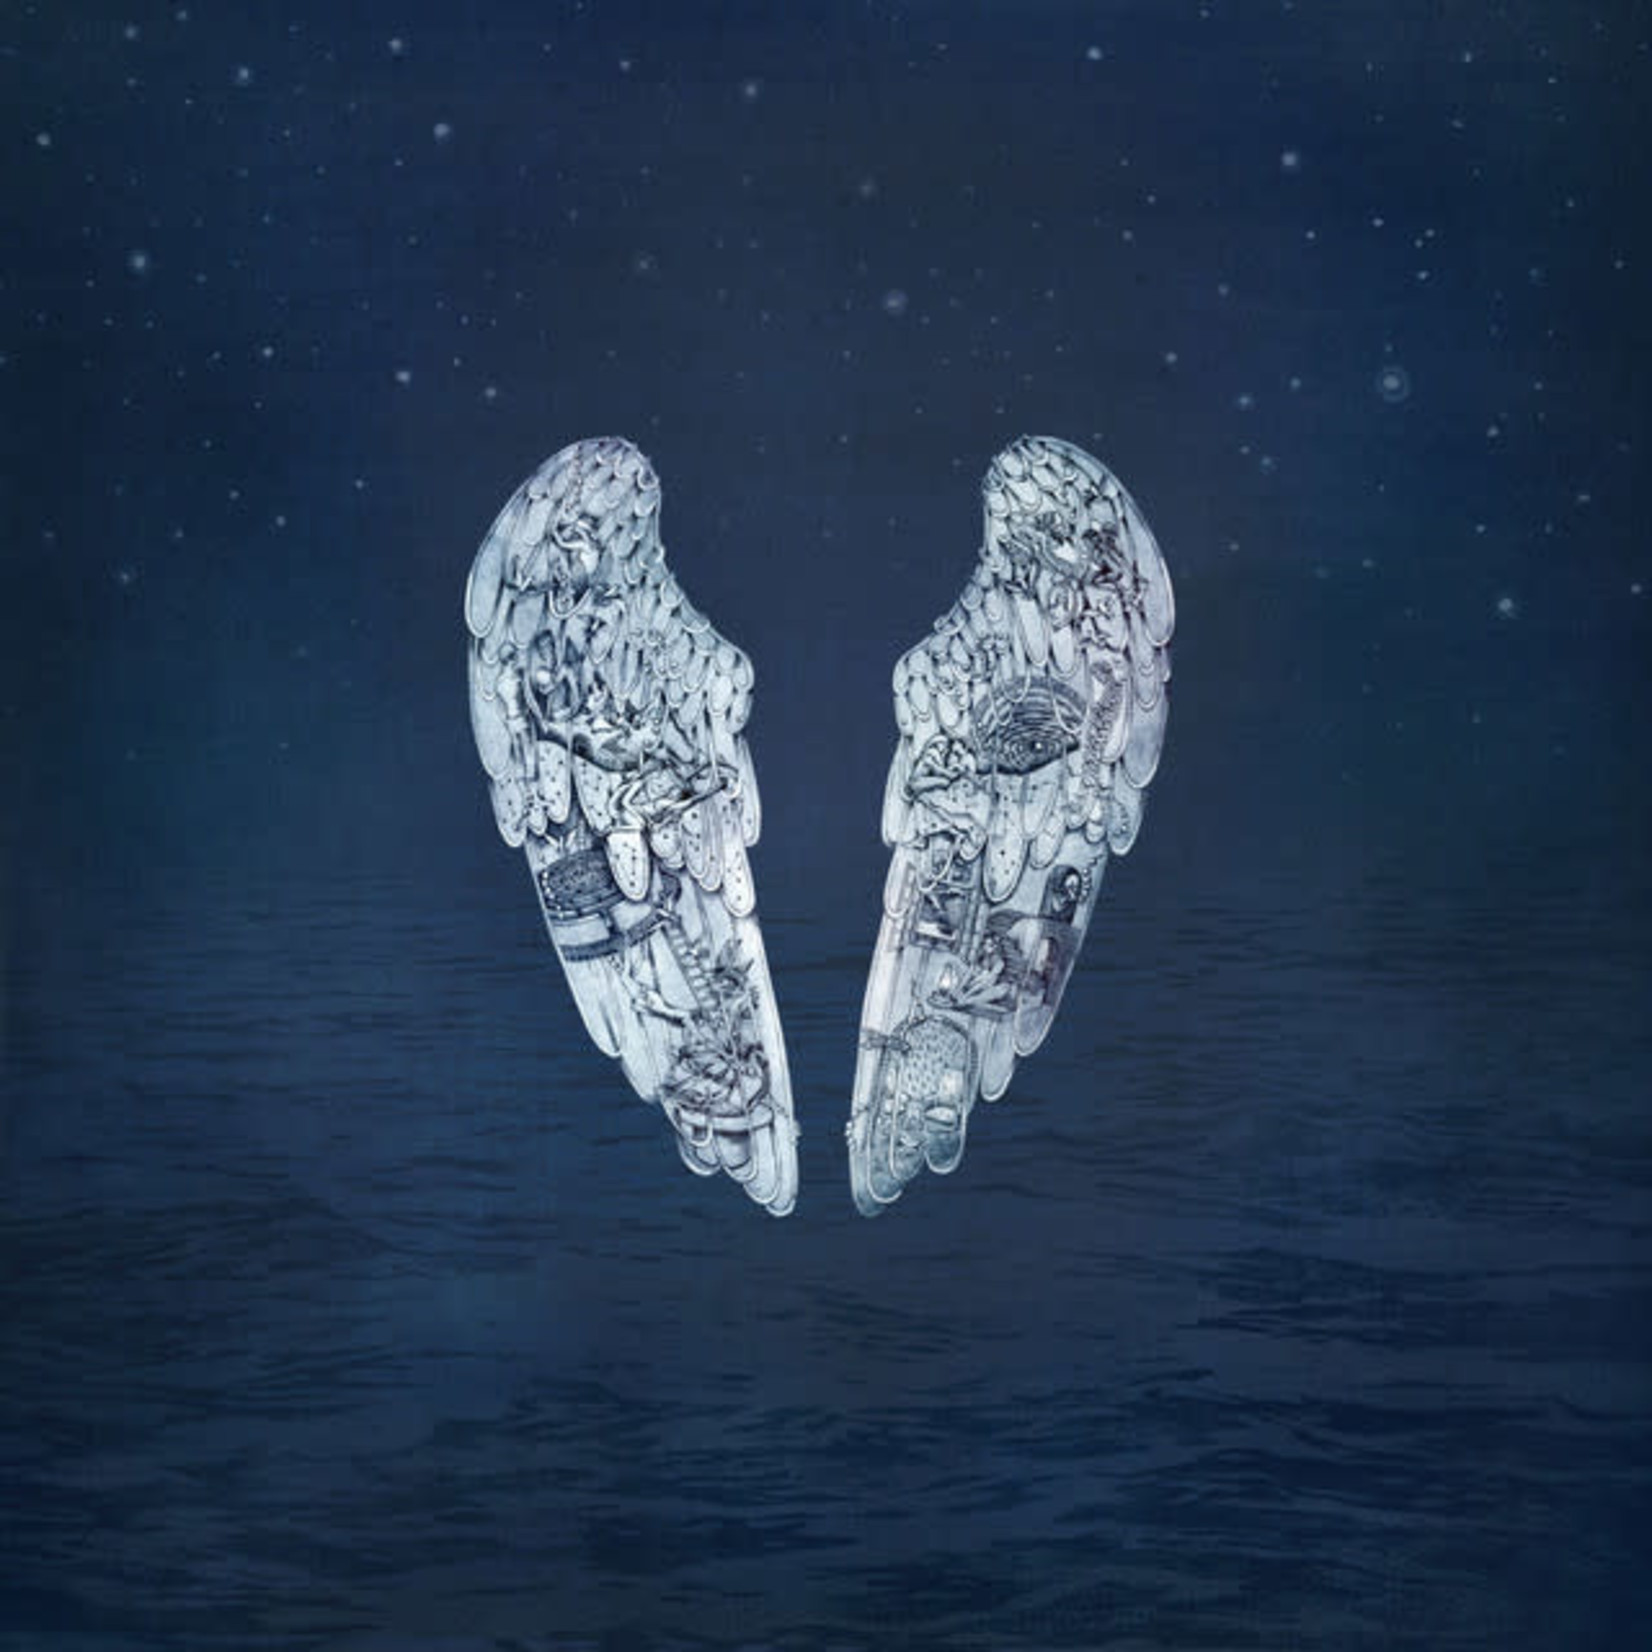 Vinyl Coldplay - Ghost Stories